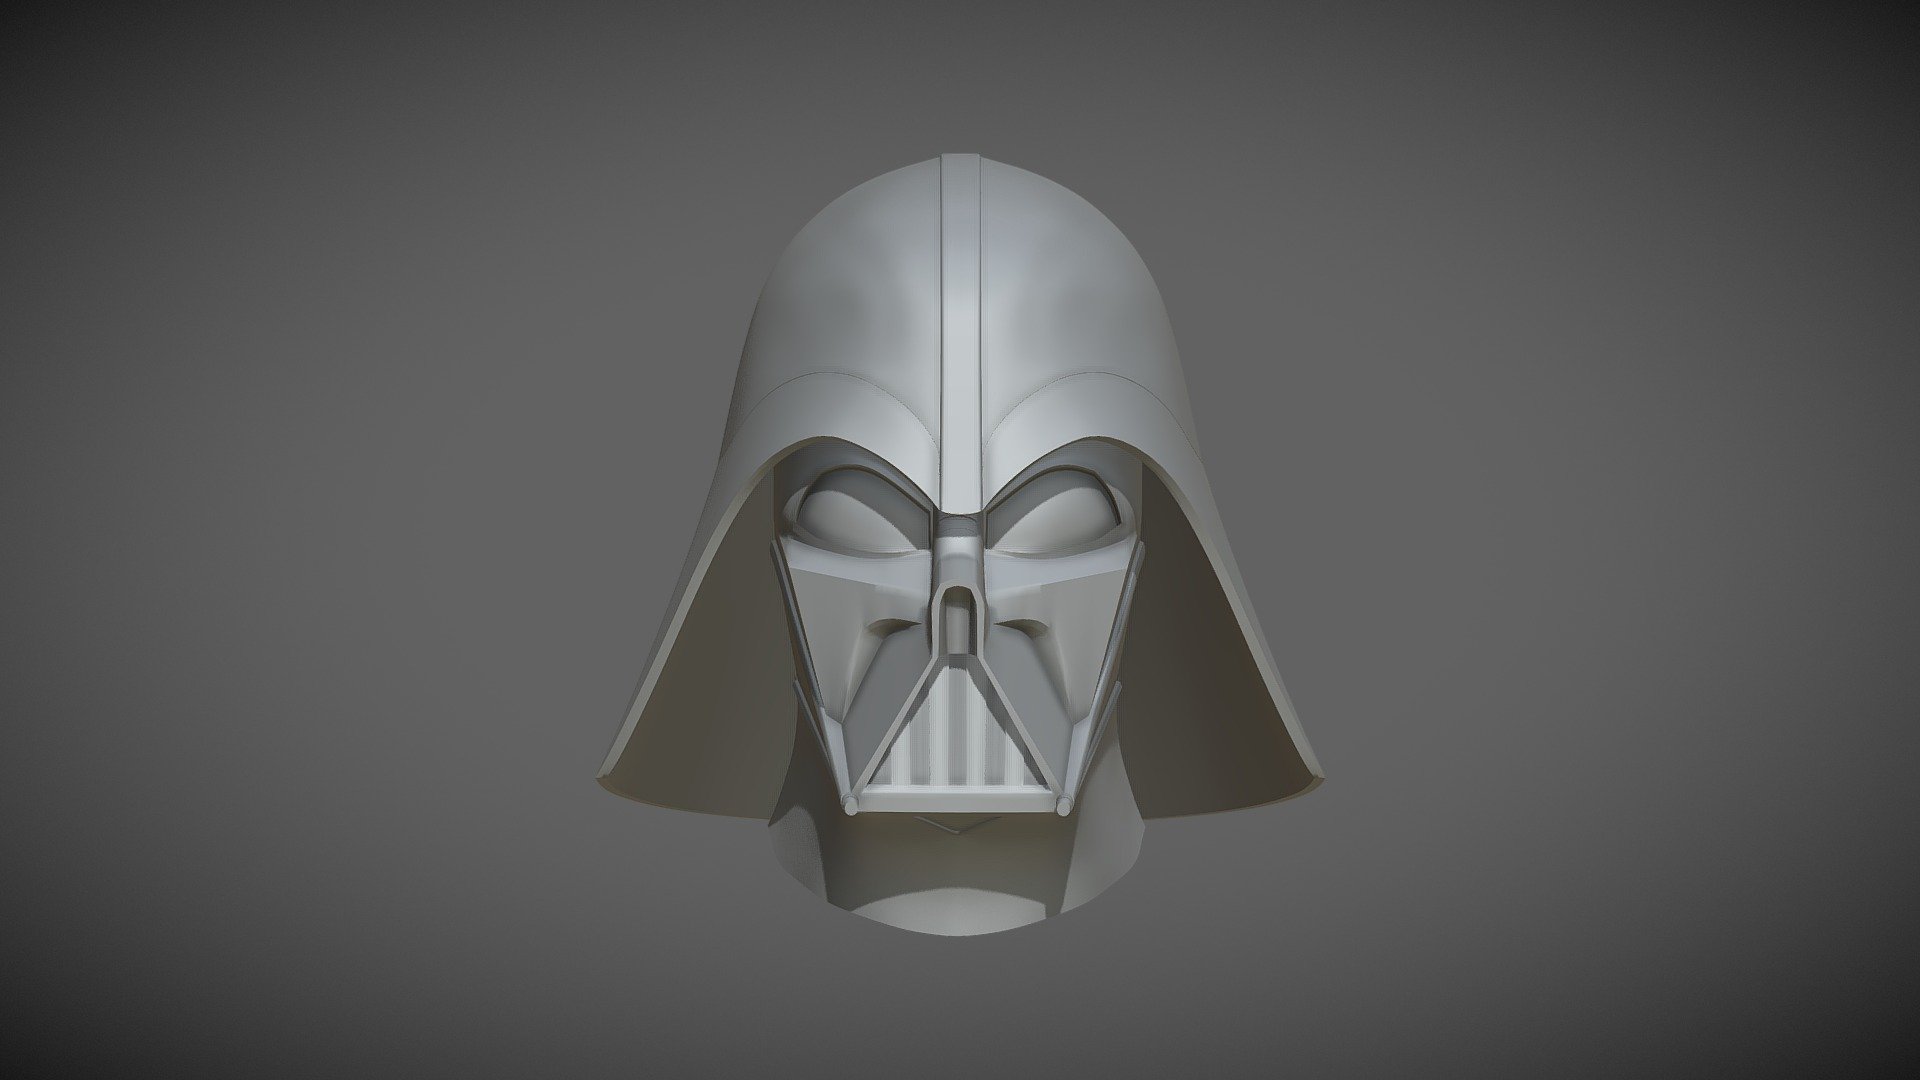 Star Wars Rebels Darth Vader Helmet Model. model by JMSProps [f000485]